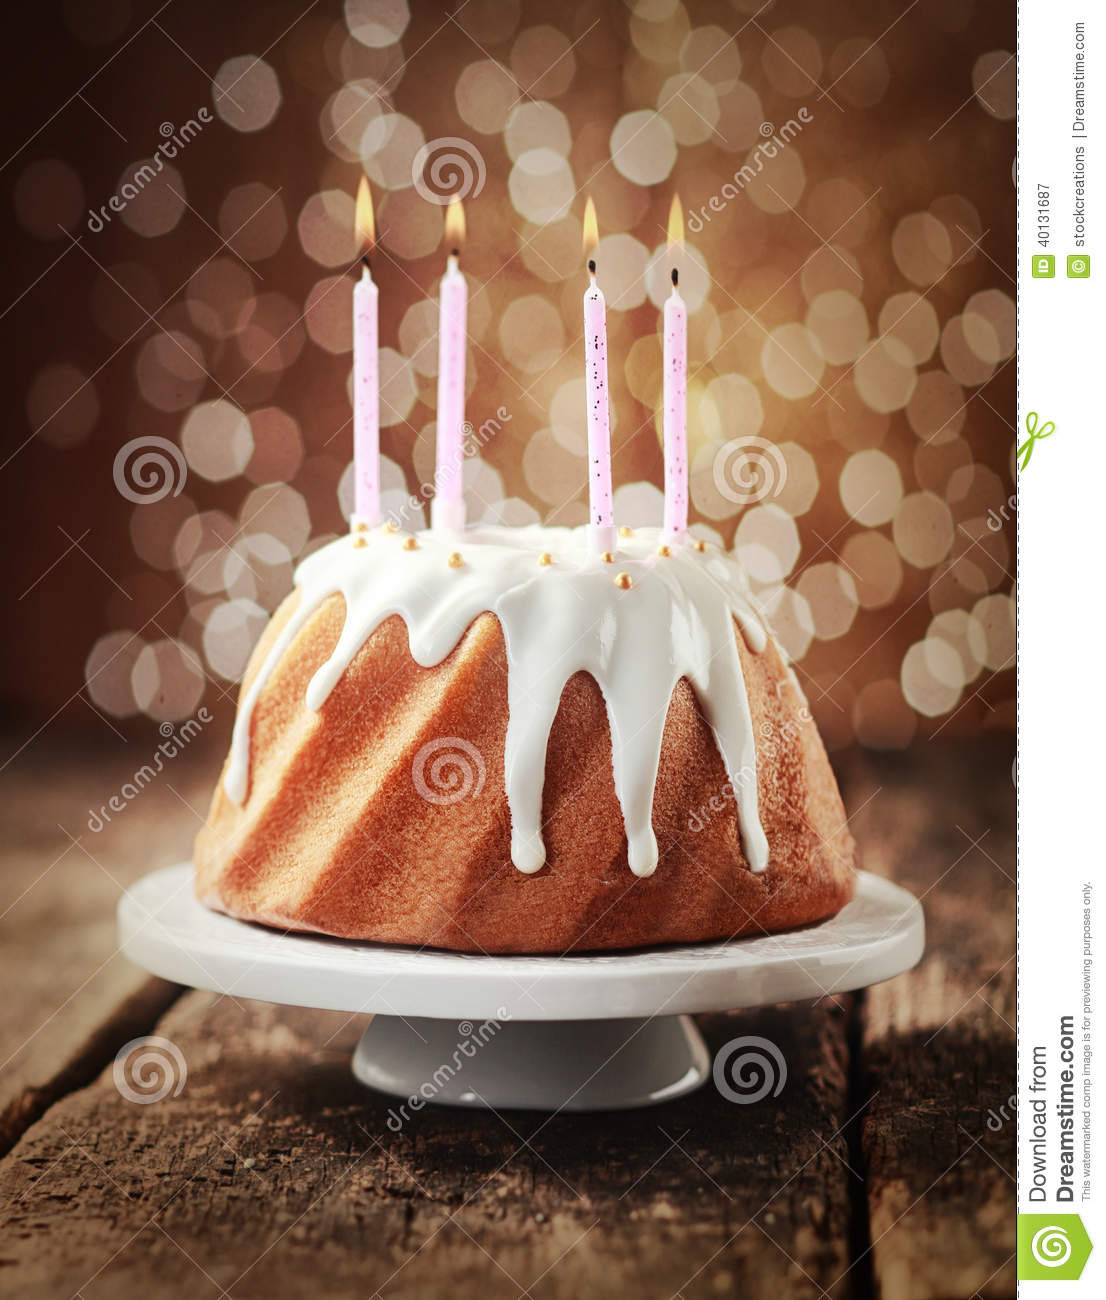 Geburtstagskuchen Mit Kerzen
 Geburtstagskuchen Mit Vier Brennenden Kerzen Stockbild